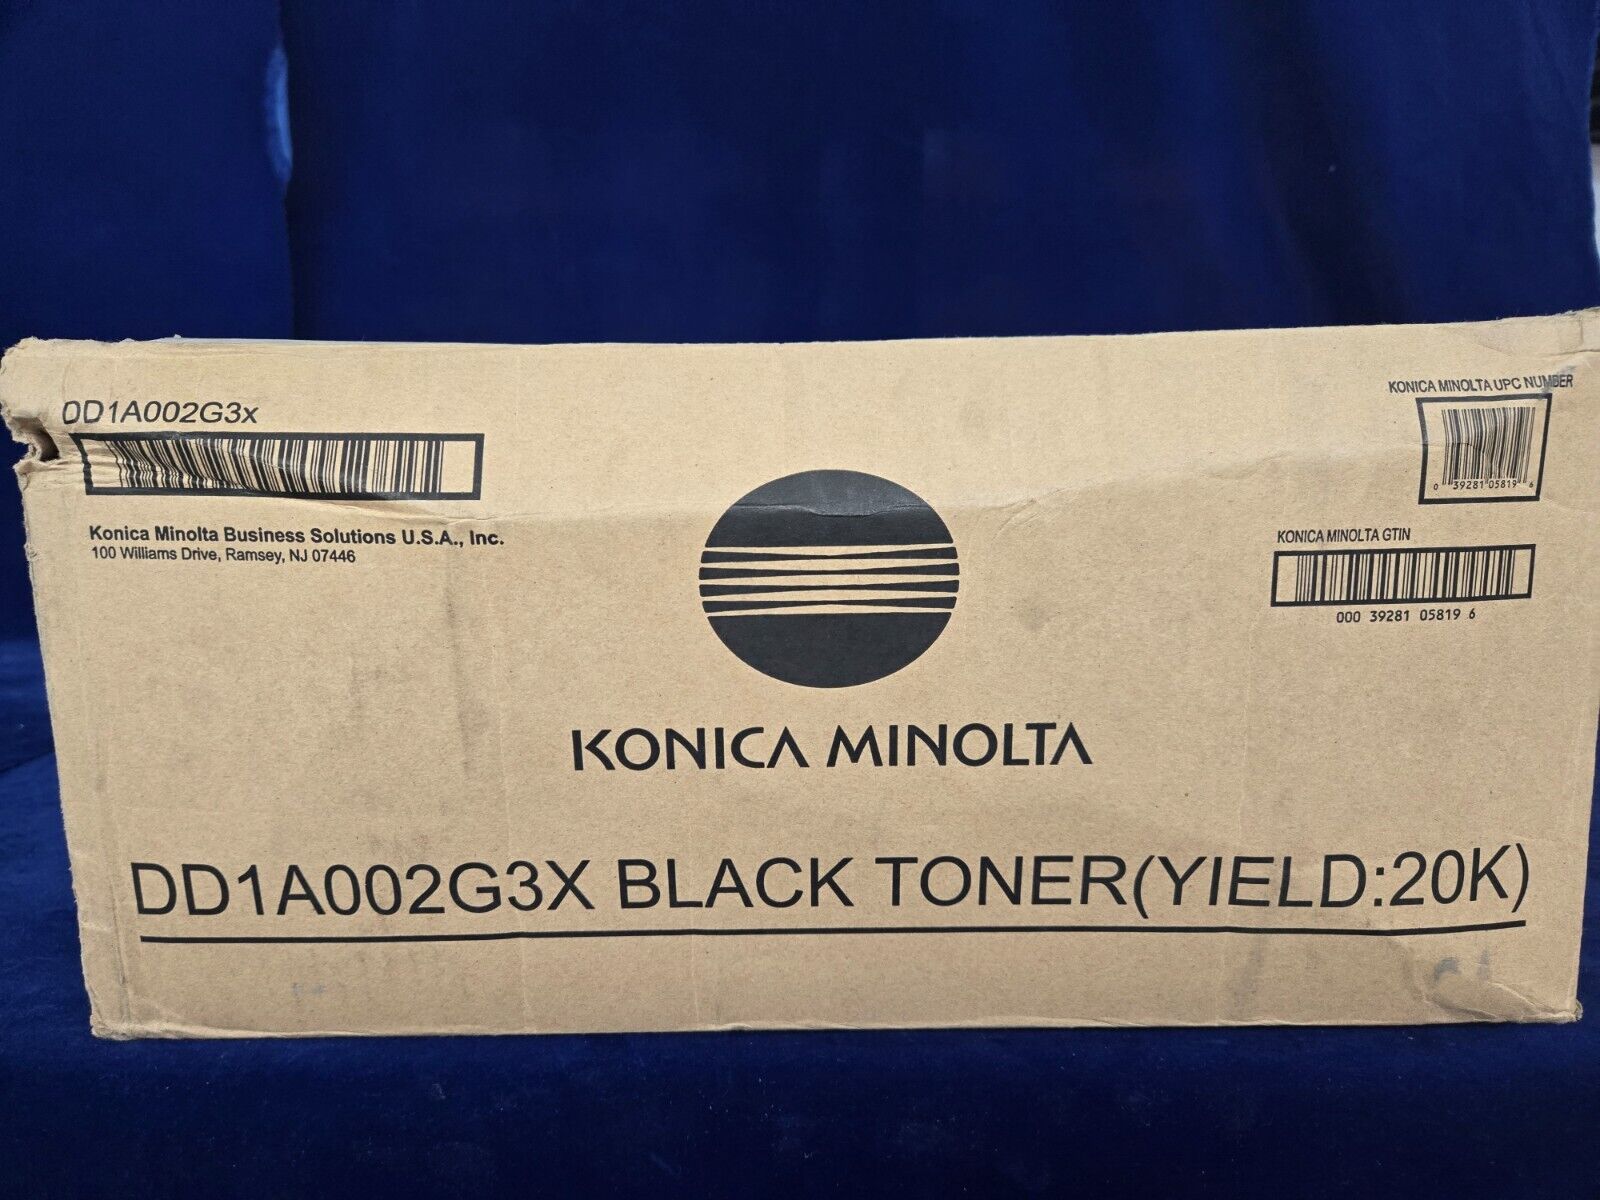 Konica Minolta DD1A002G3X, TN-219 Black Toner Cartridge 20K,  BIZHUB 25E OEM 